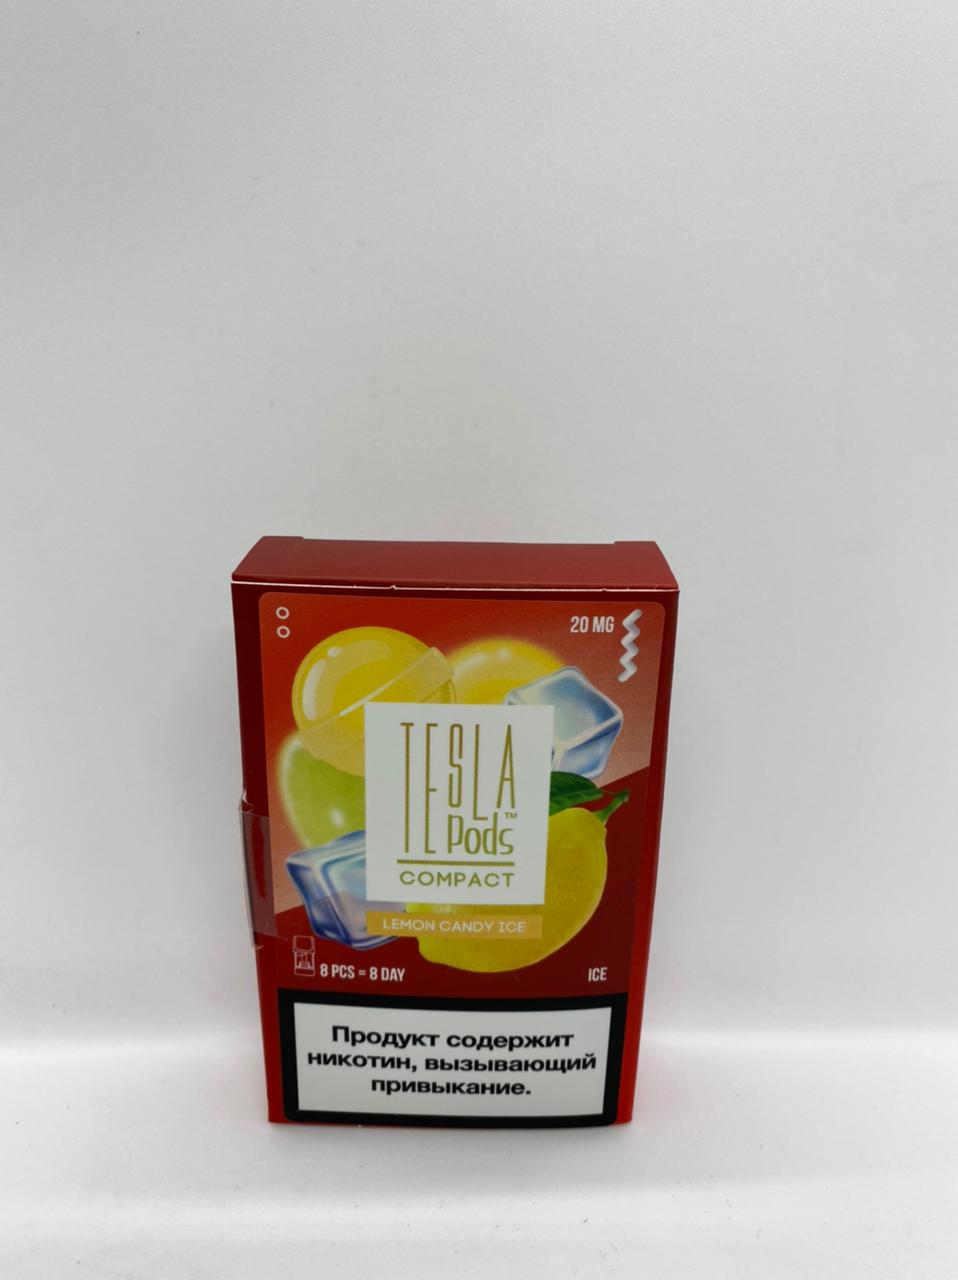 Набор TESLA pods Картридж Lemon candy ice 2% (8 картриджей) compact для Logic с доставкой по Москве и России